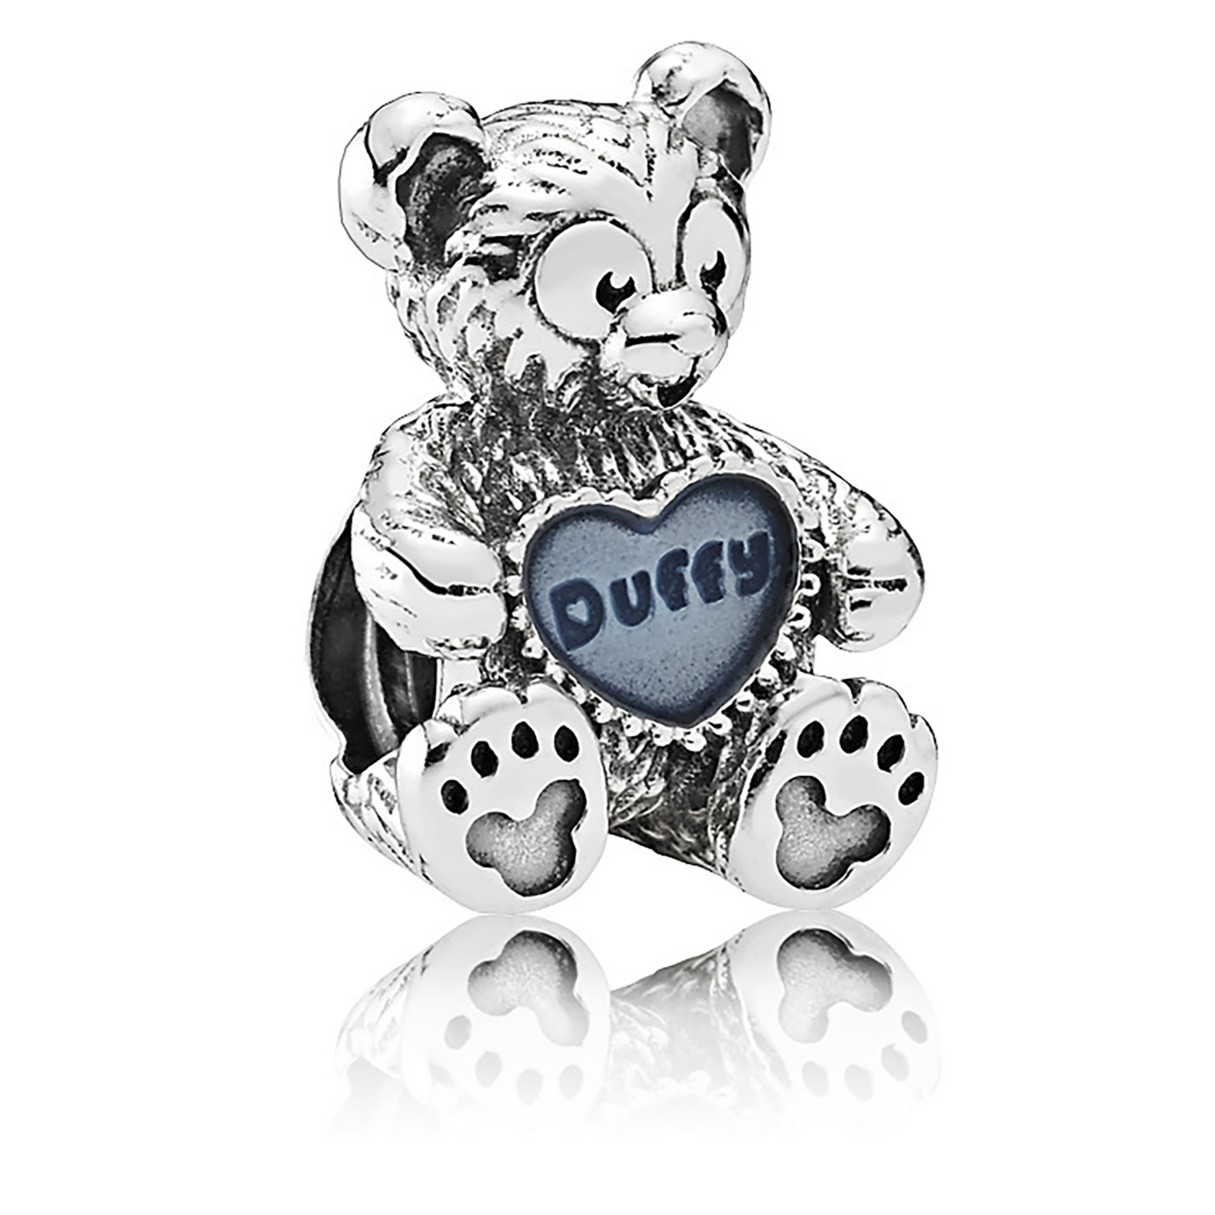 Duffy the Disney Bear Charm by Pandora Jewelry